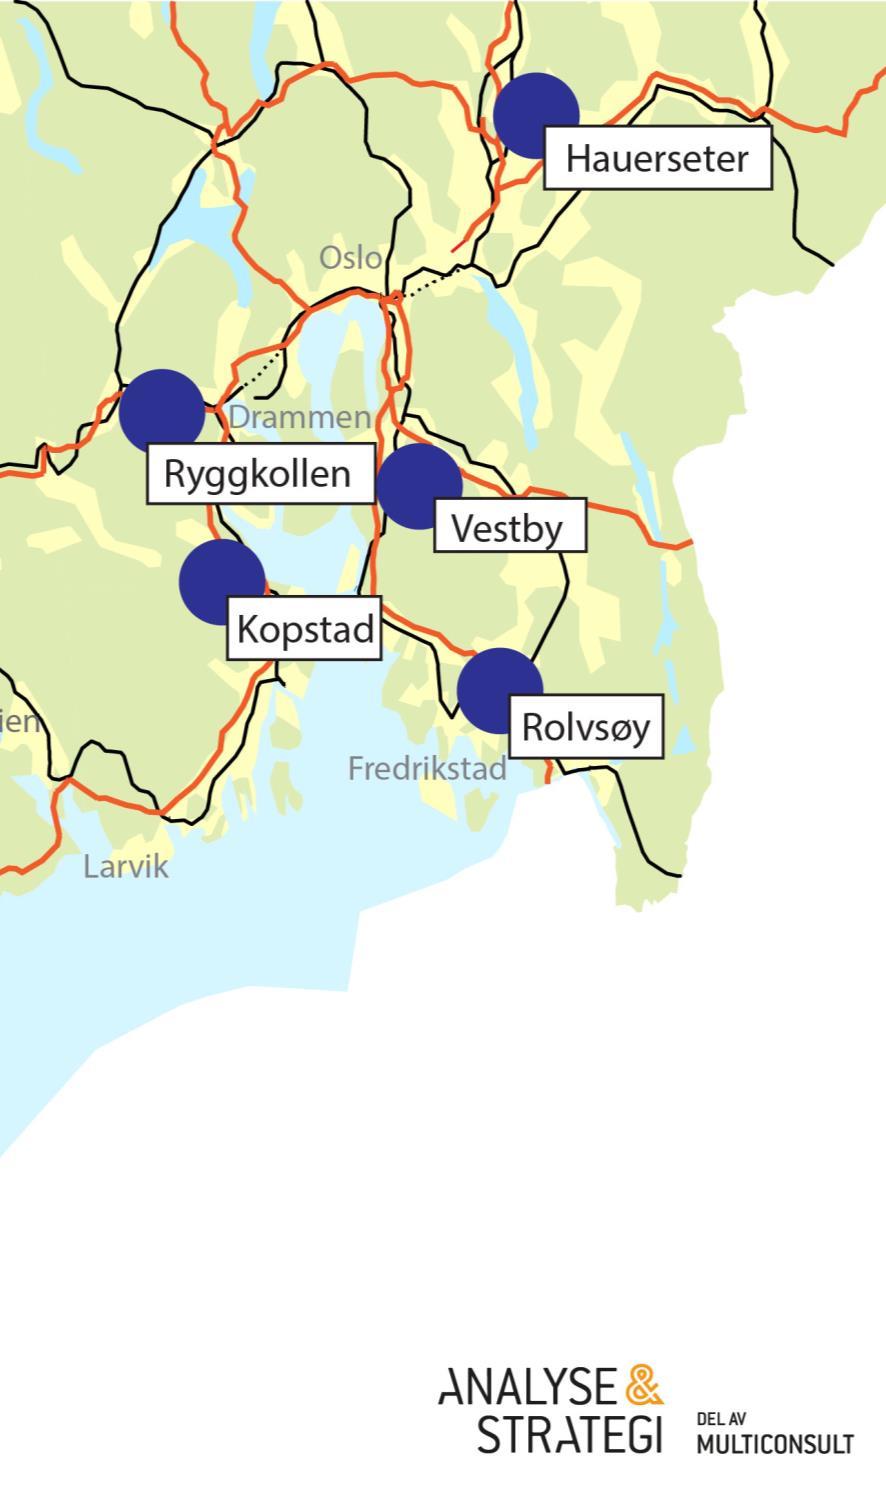 Lokalisering Hauerseter Øvre Romerike sør og nord. Nord størst potensial/fleksibilitet Skog og noe dyrka mark Vestby Søndre Akershus/Nordre Østfold. Plassering langs Østre linje ble også vurdert.